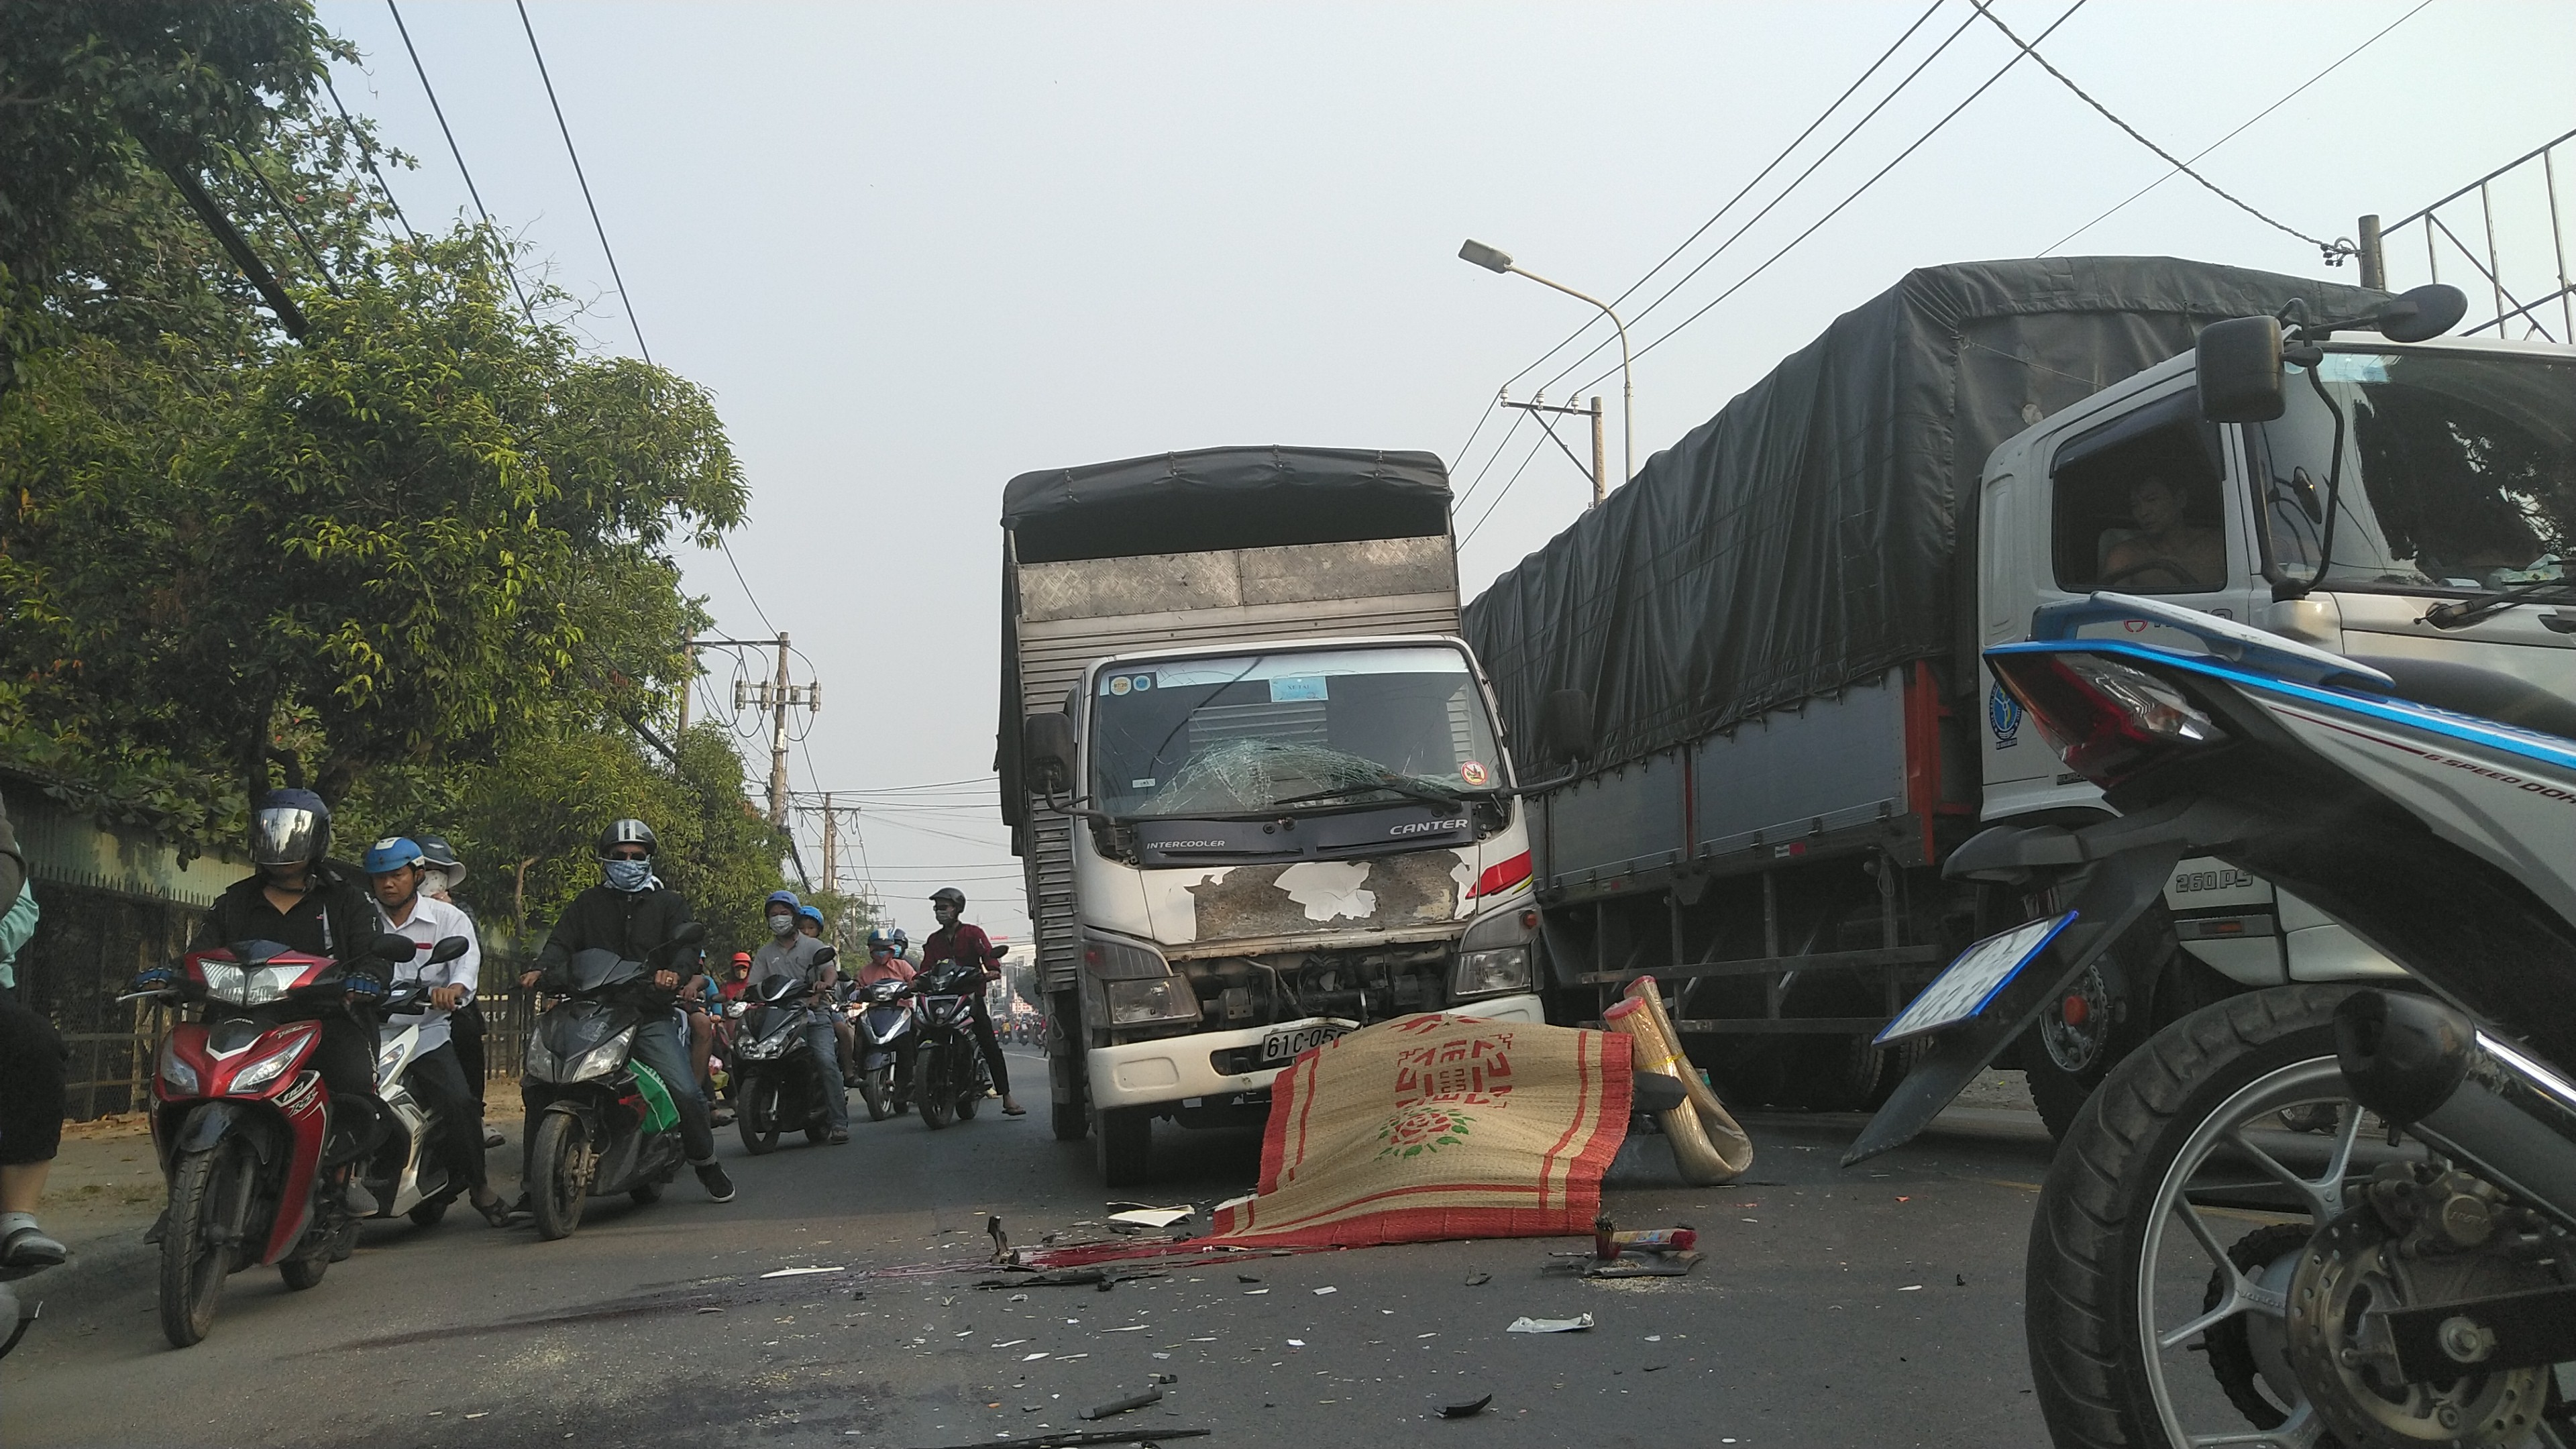 Tai nạn giao thông